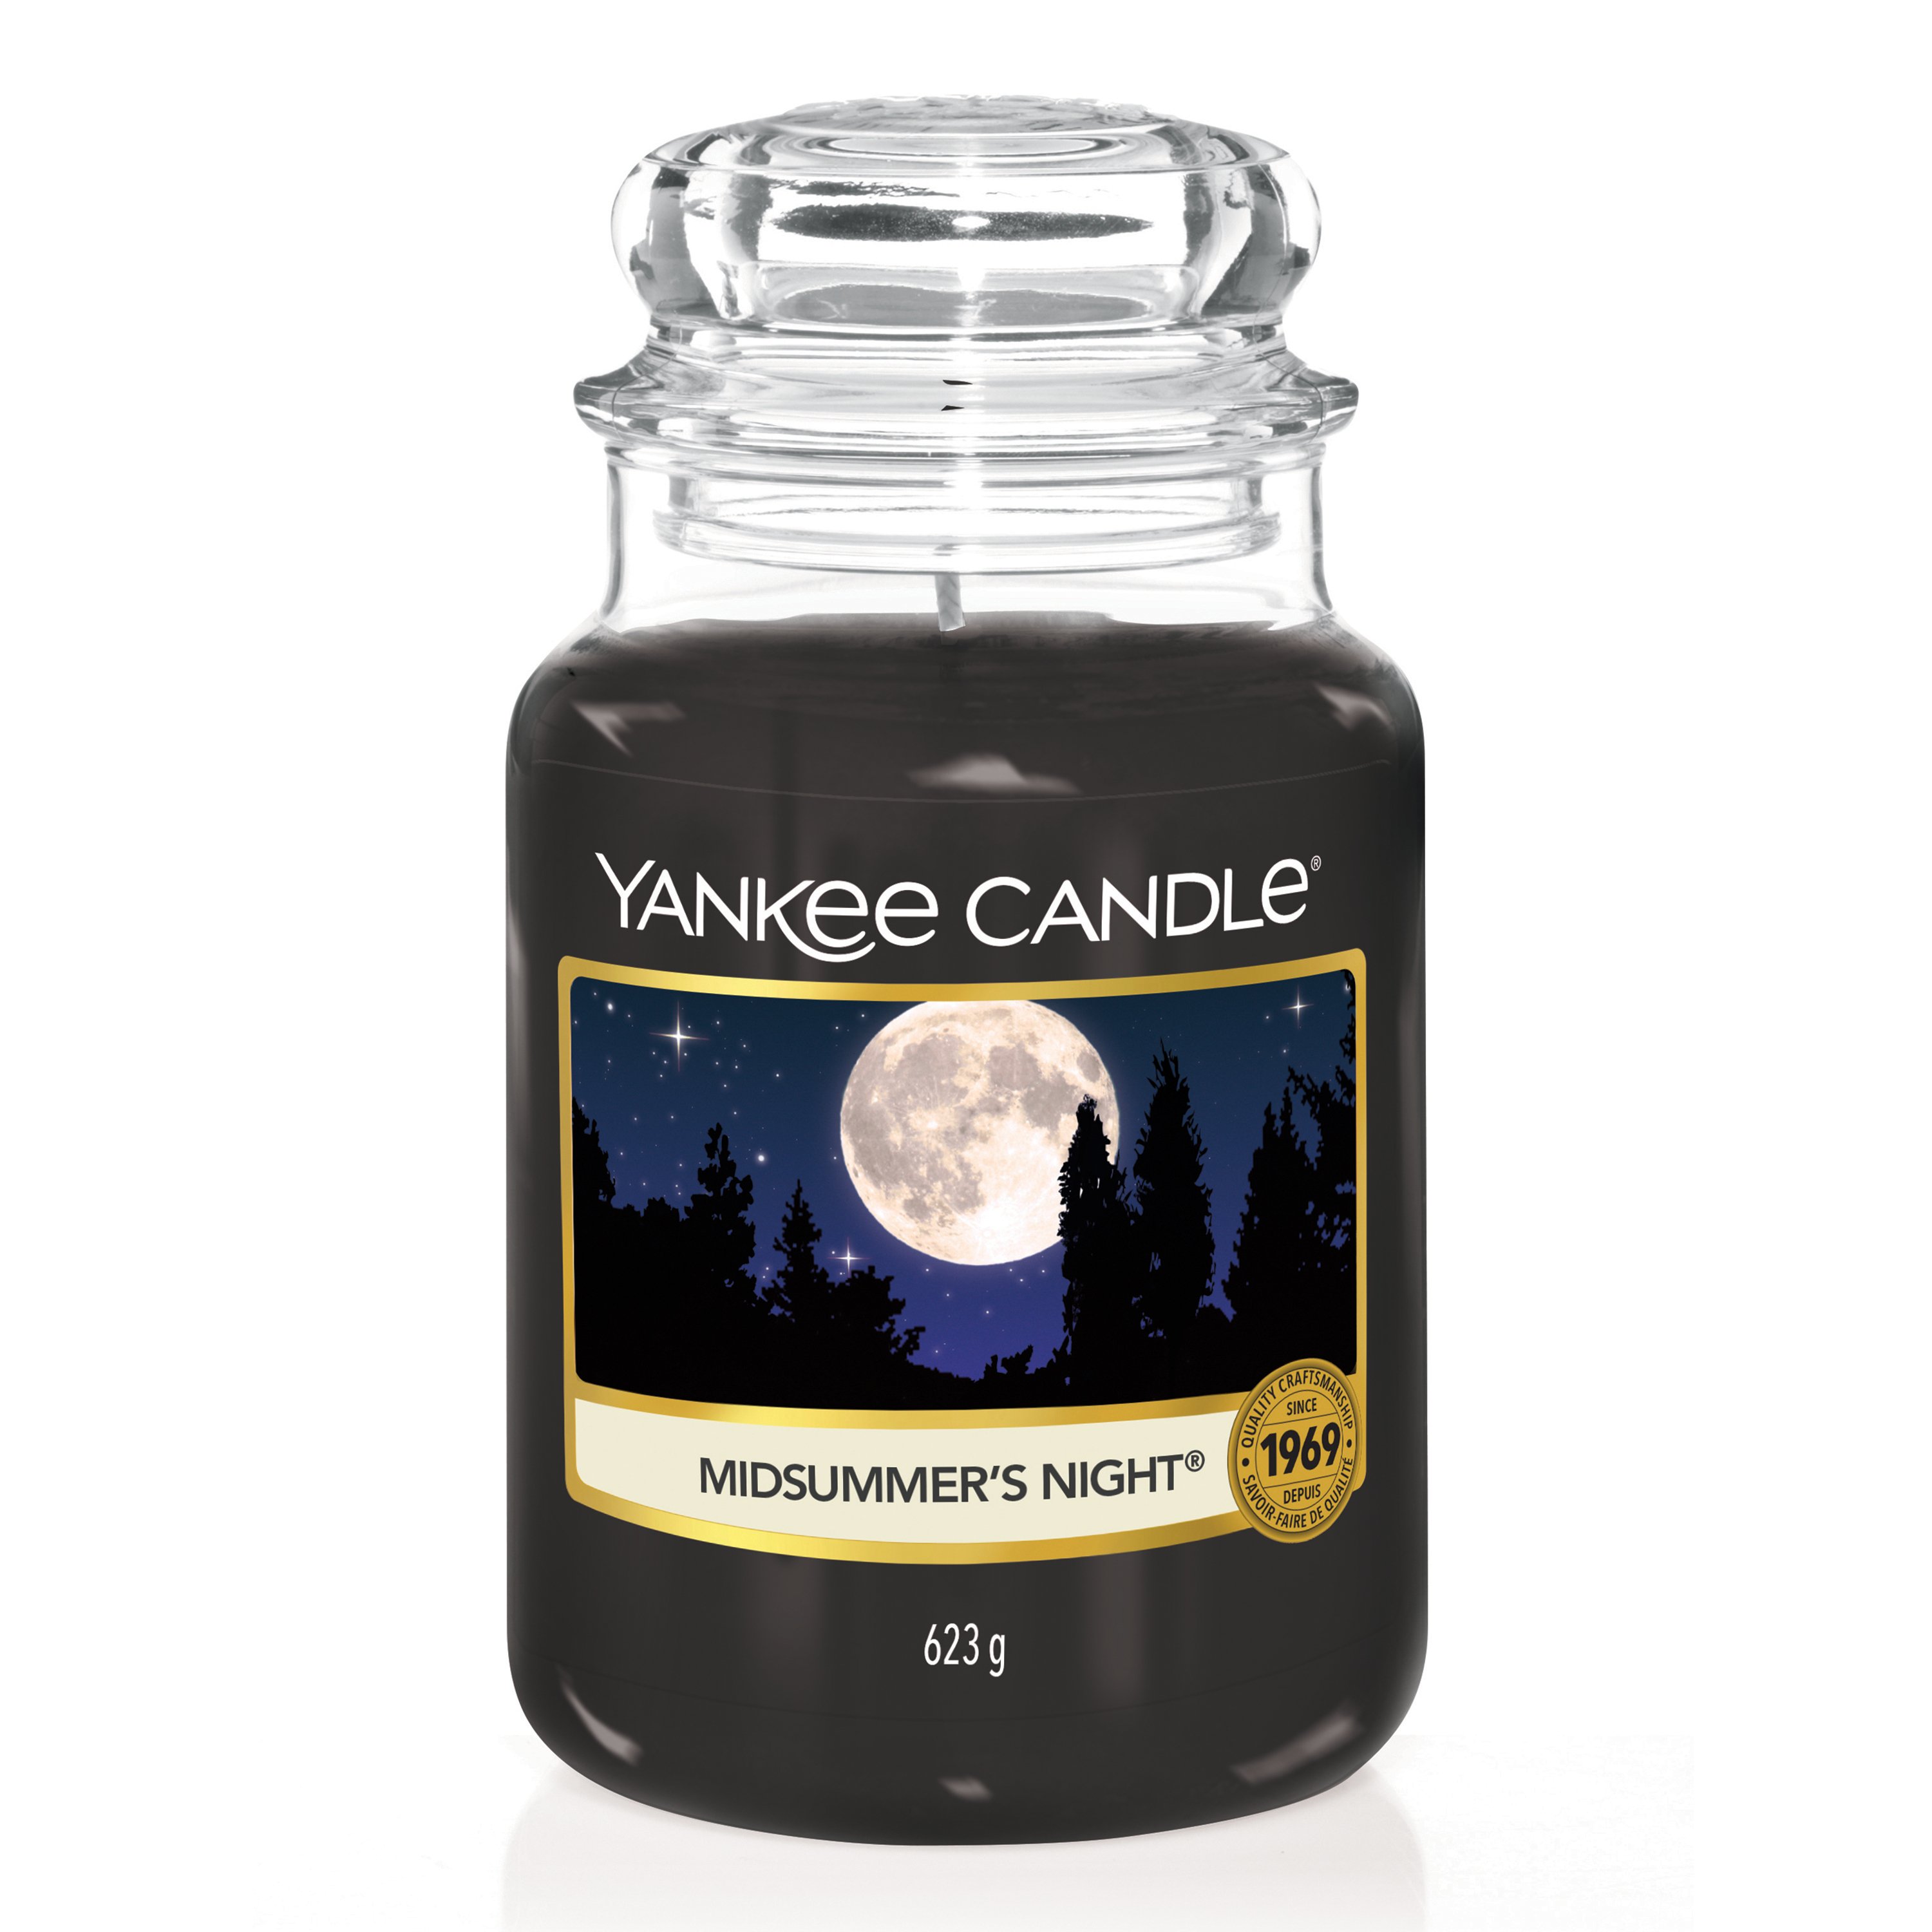 Vous voulez acheter des bougies Yankee Candle? Demain à la maison